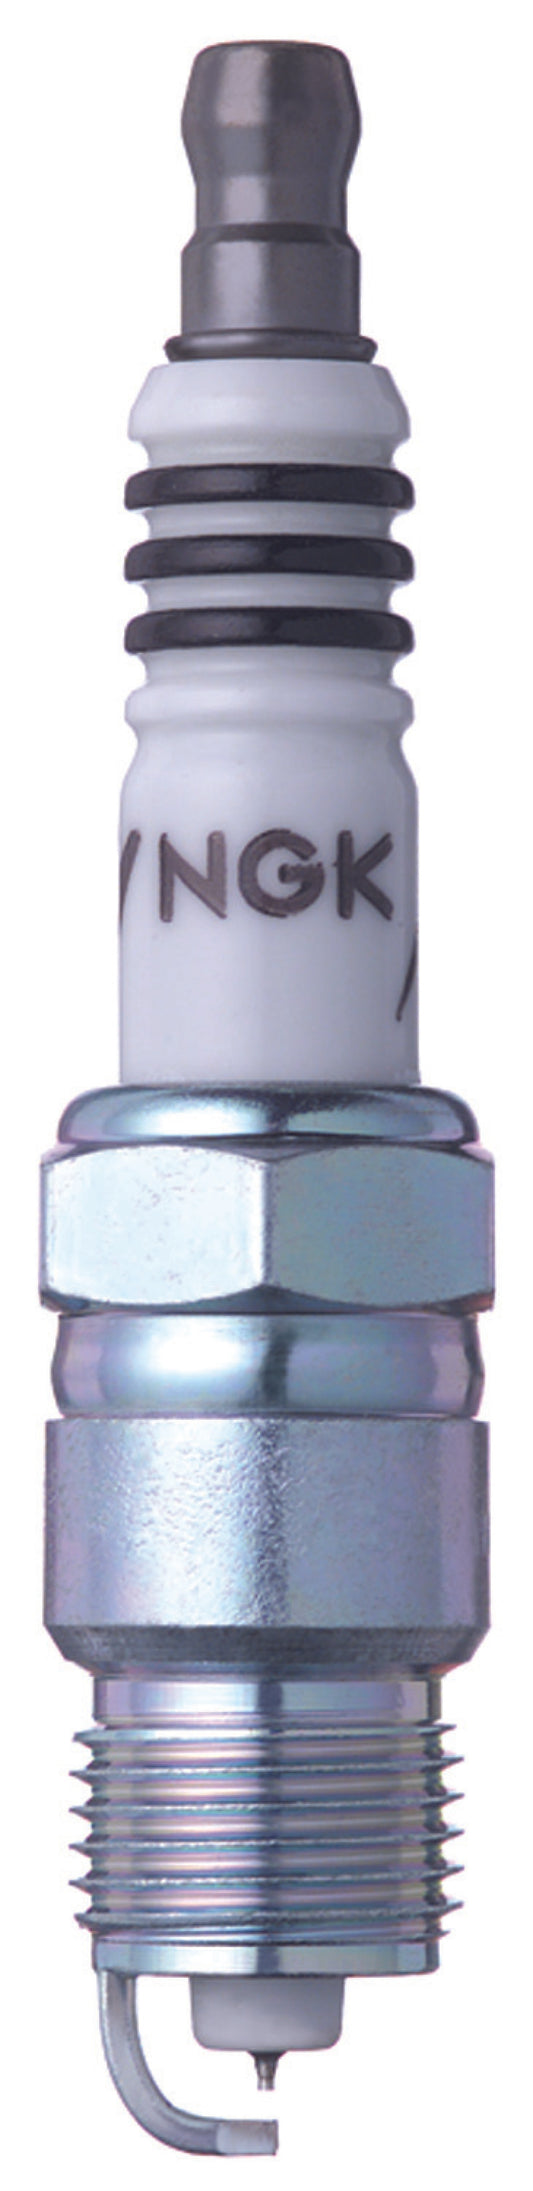 NGK Iridium IX Spark Plug Box of 4 (UR55IX)